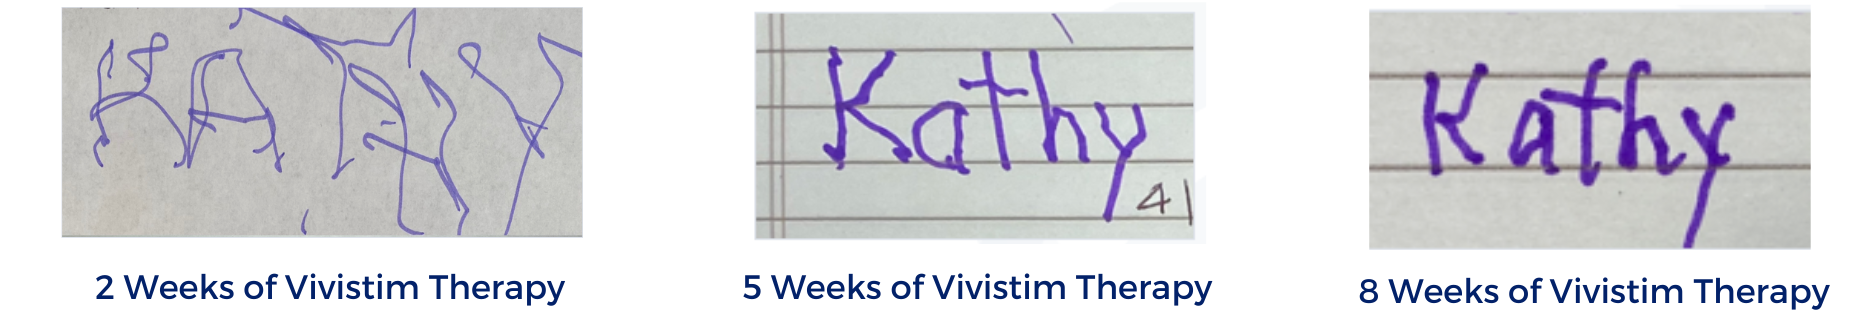 Kathy Writing Samples_2_5_8 weeks (1)